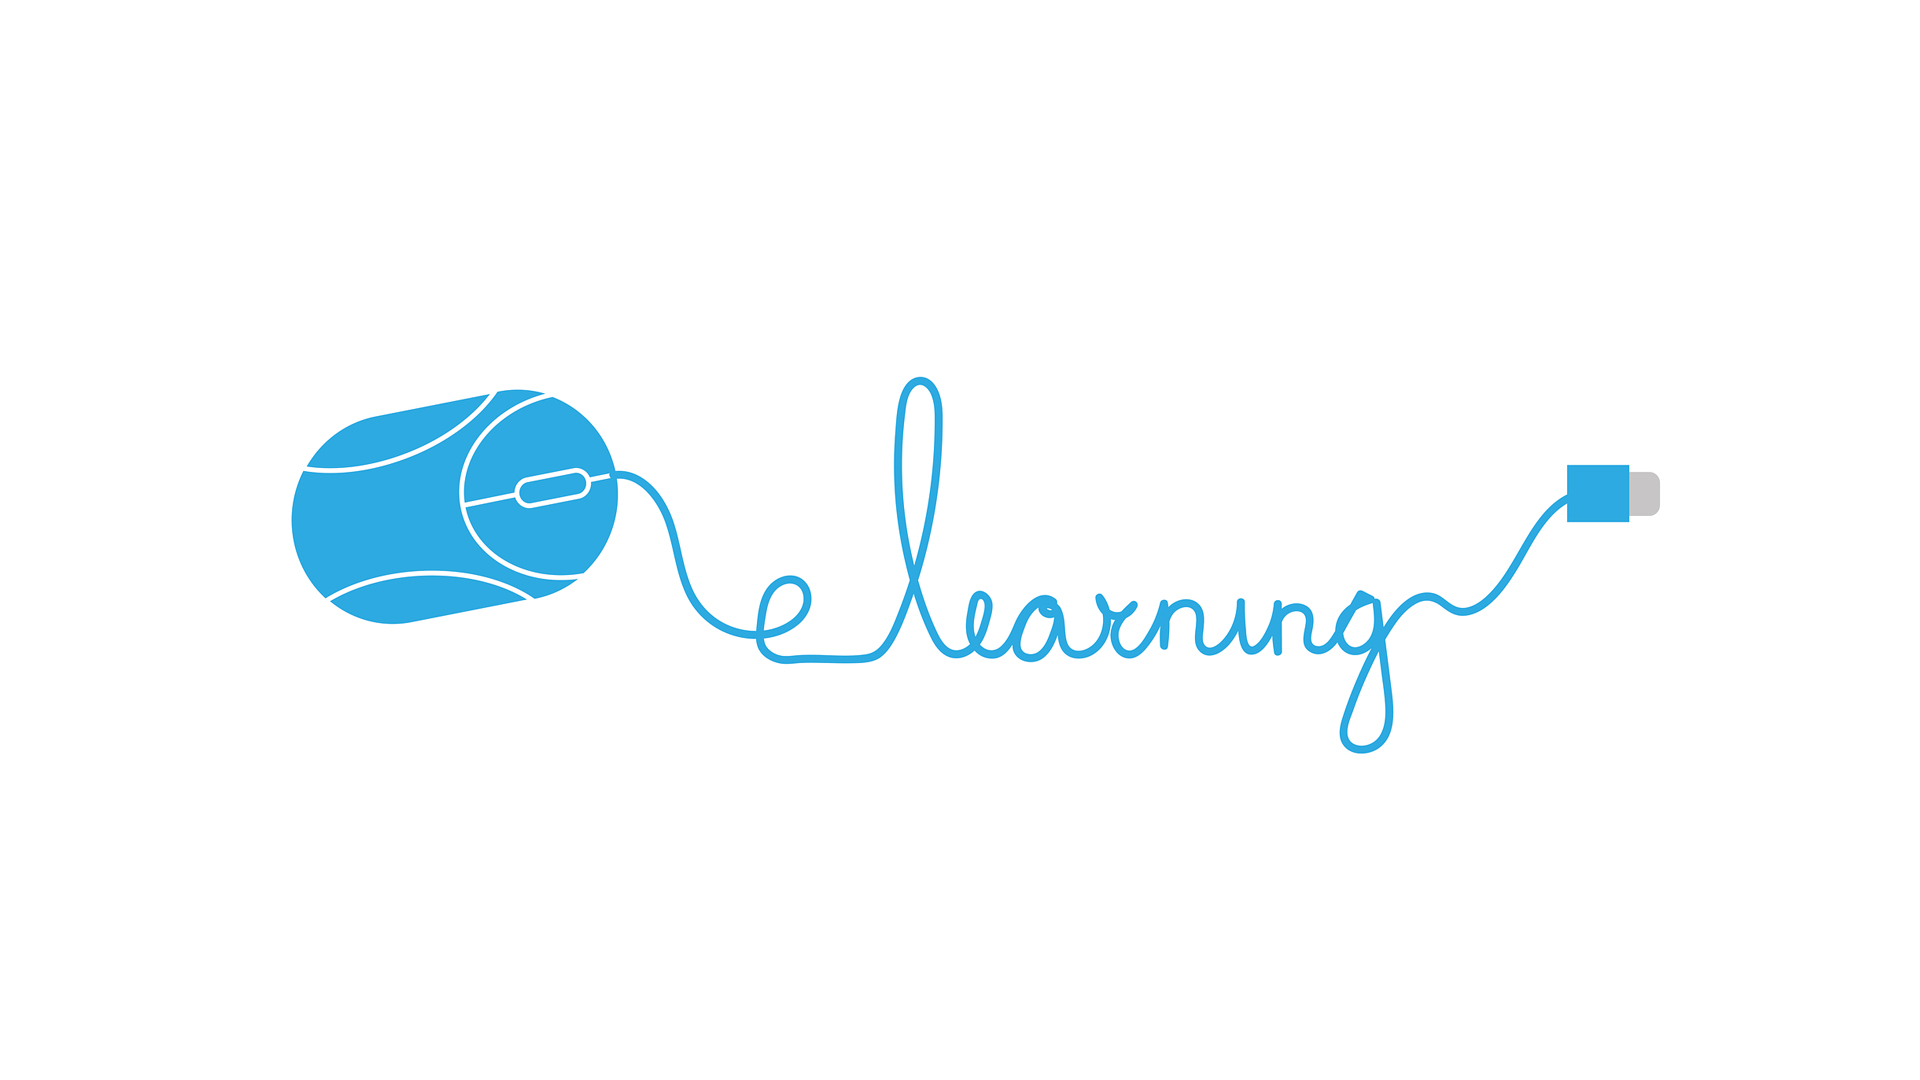 Základní předpoklad pro kvalitní e-learning? Prvotřídní tým!